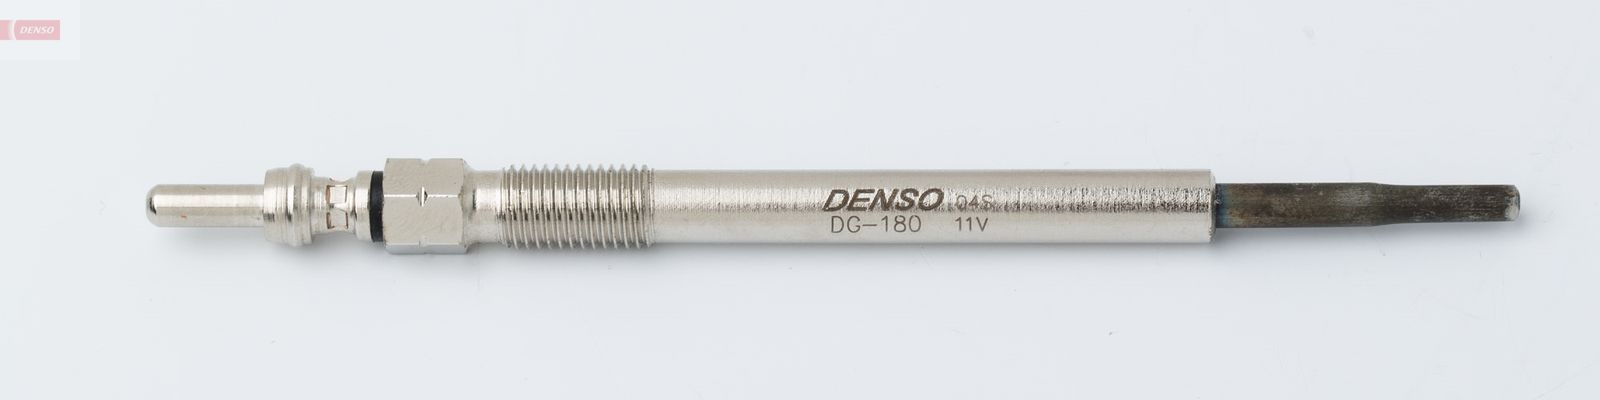 Žhavící svíčka DENSO DG-180